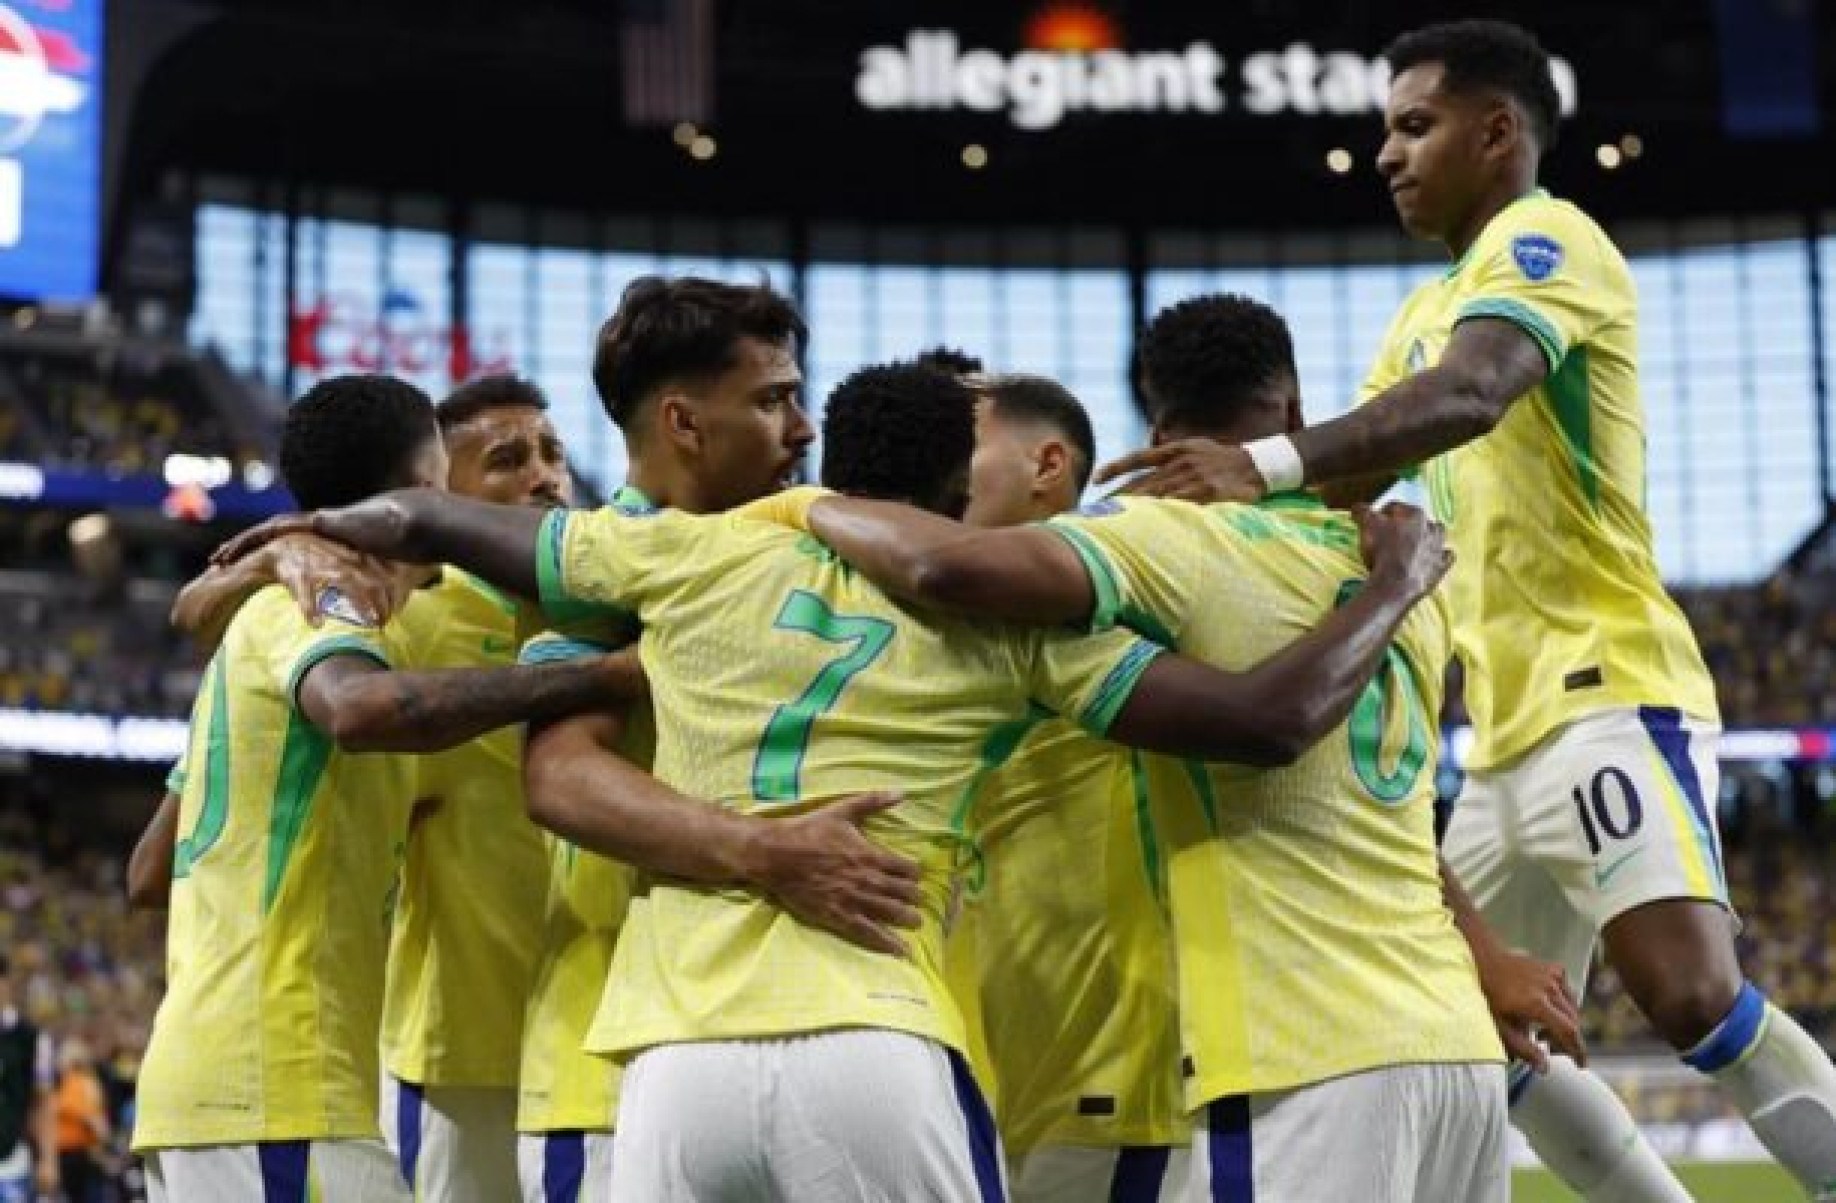 Roberto Assaf: Brasil goleia Paraguai. Prevalece a maior qualidade técnica